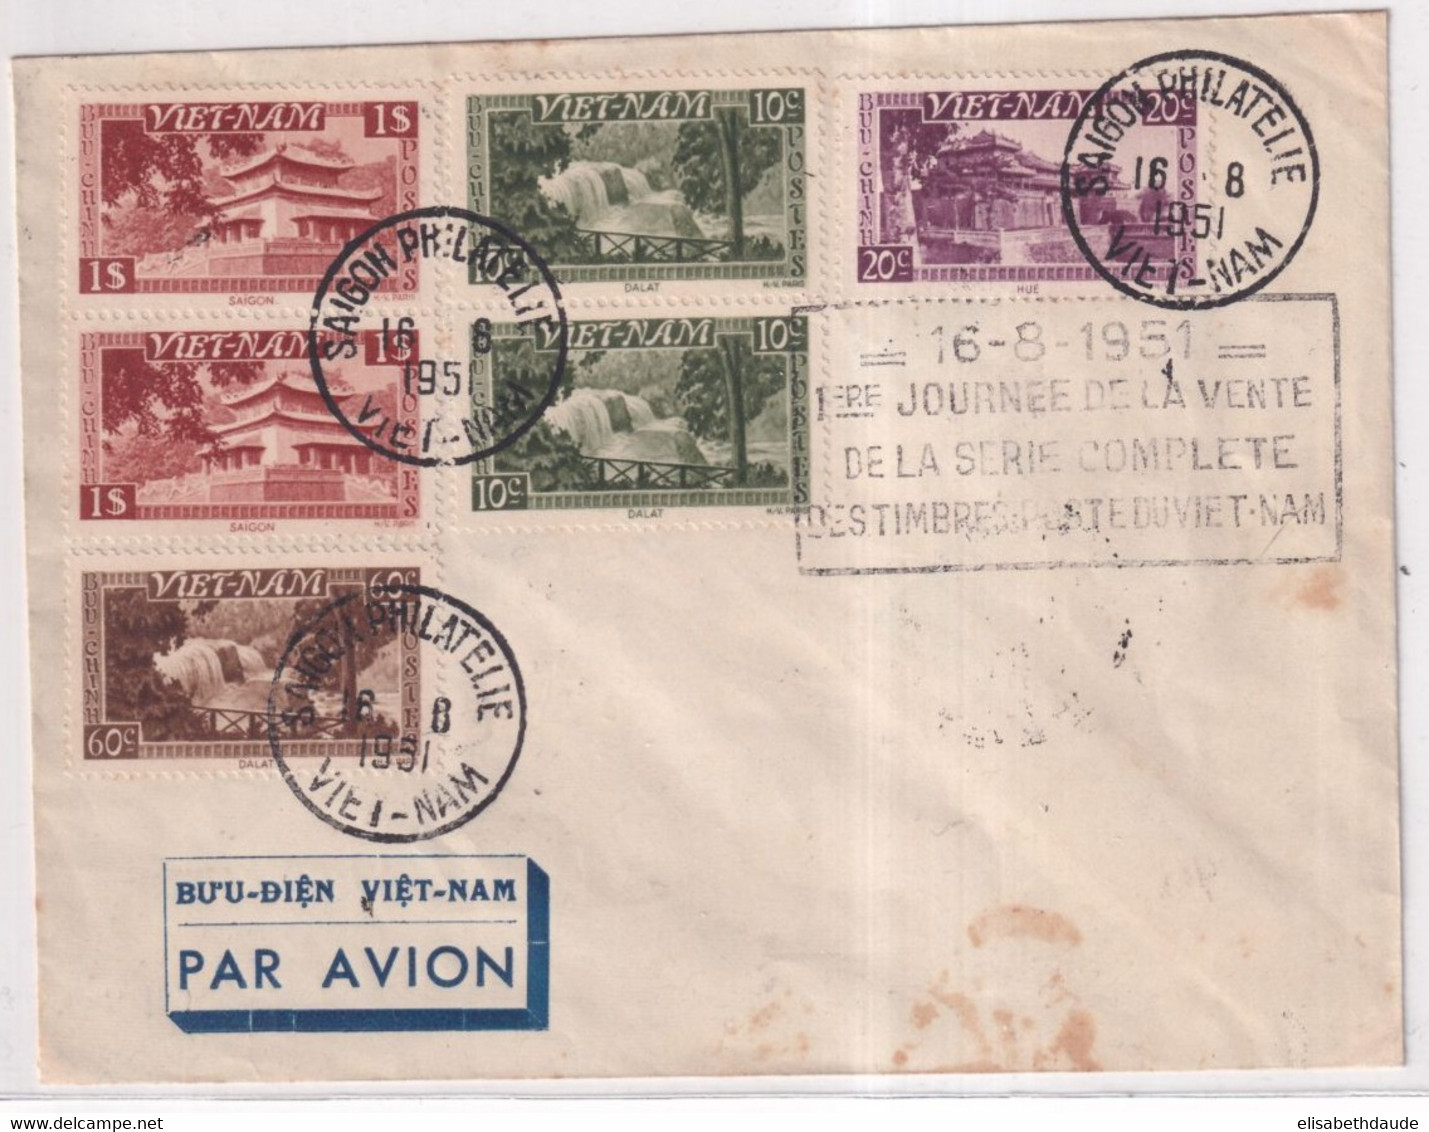 1951 - VIET-NAM - ENVELOPPE Avec 1° JOURNEE De VENTE De La SERIE UNITE NATIONALE ! à SAÏGON - Viêt-Nam